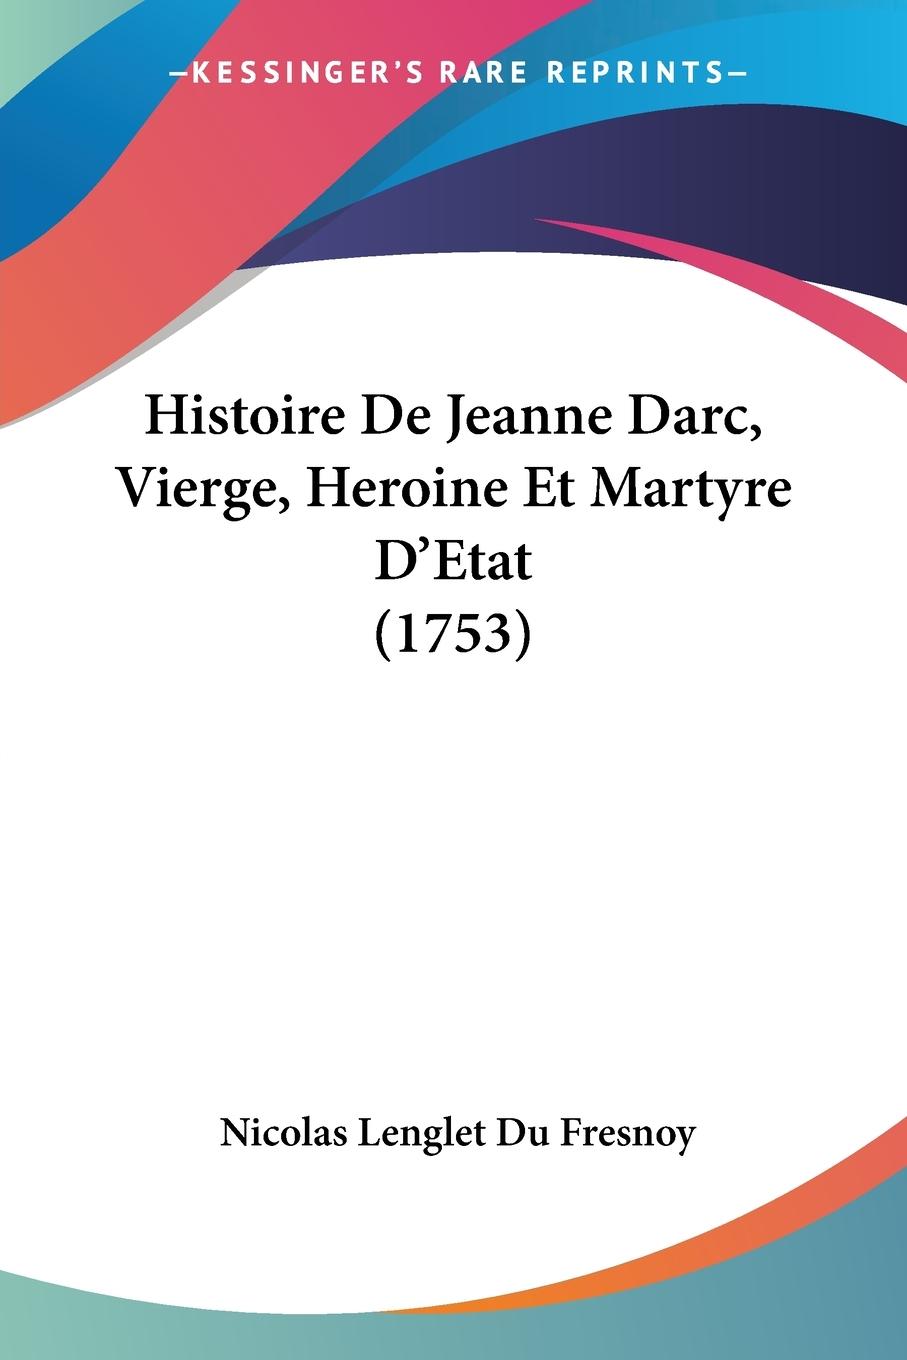 Histoire De Jeanne Darc, Vierge, Heroine Et Martyre D Etat (1753) - Fresnoy, Nicolas Lenglet Du